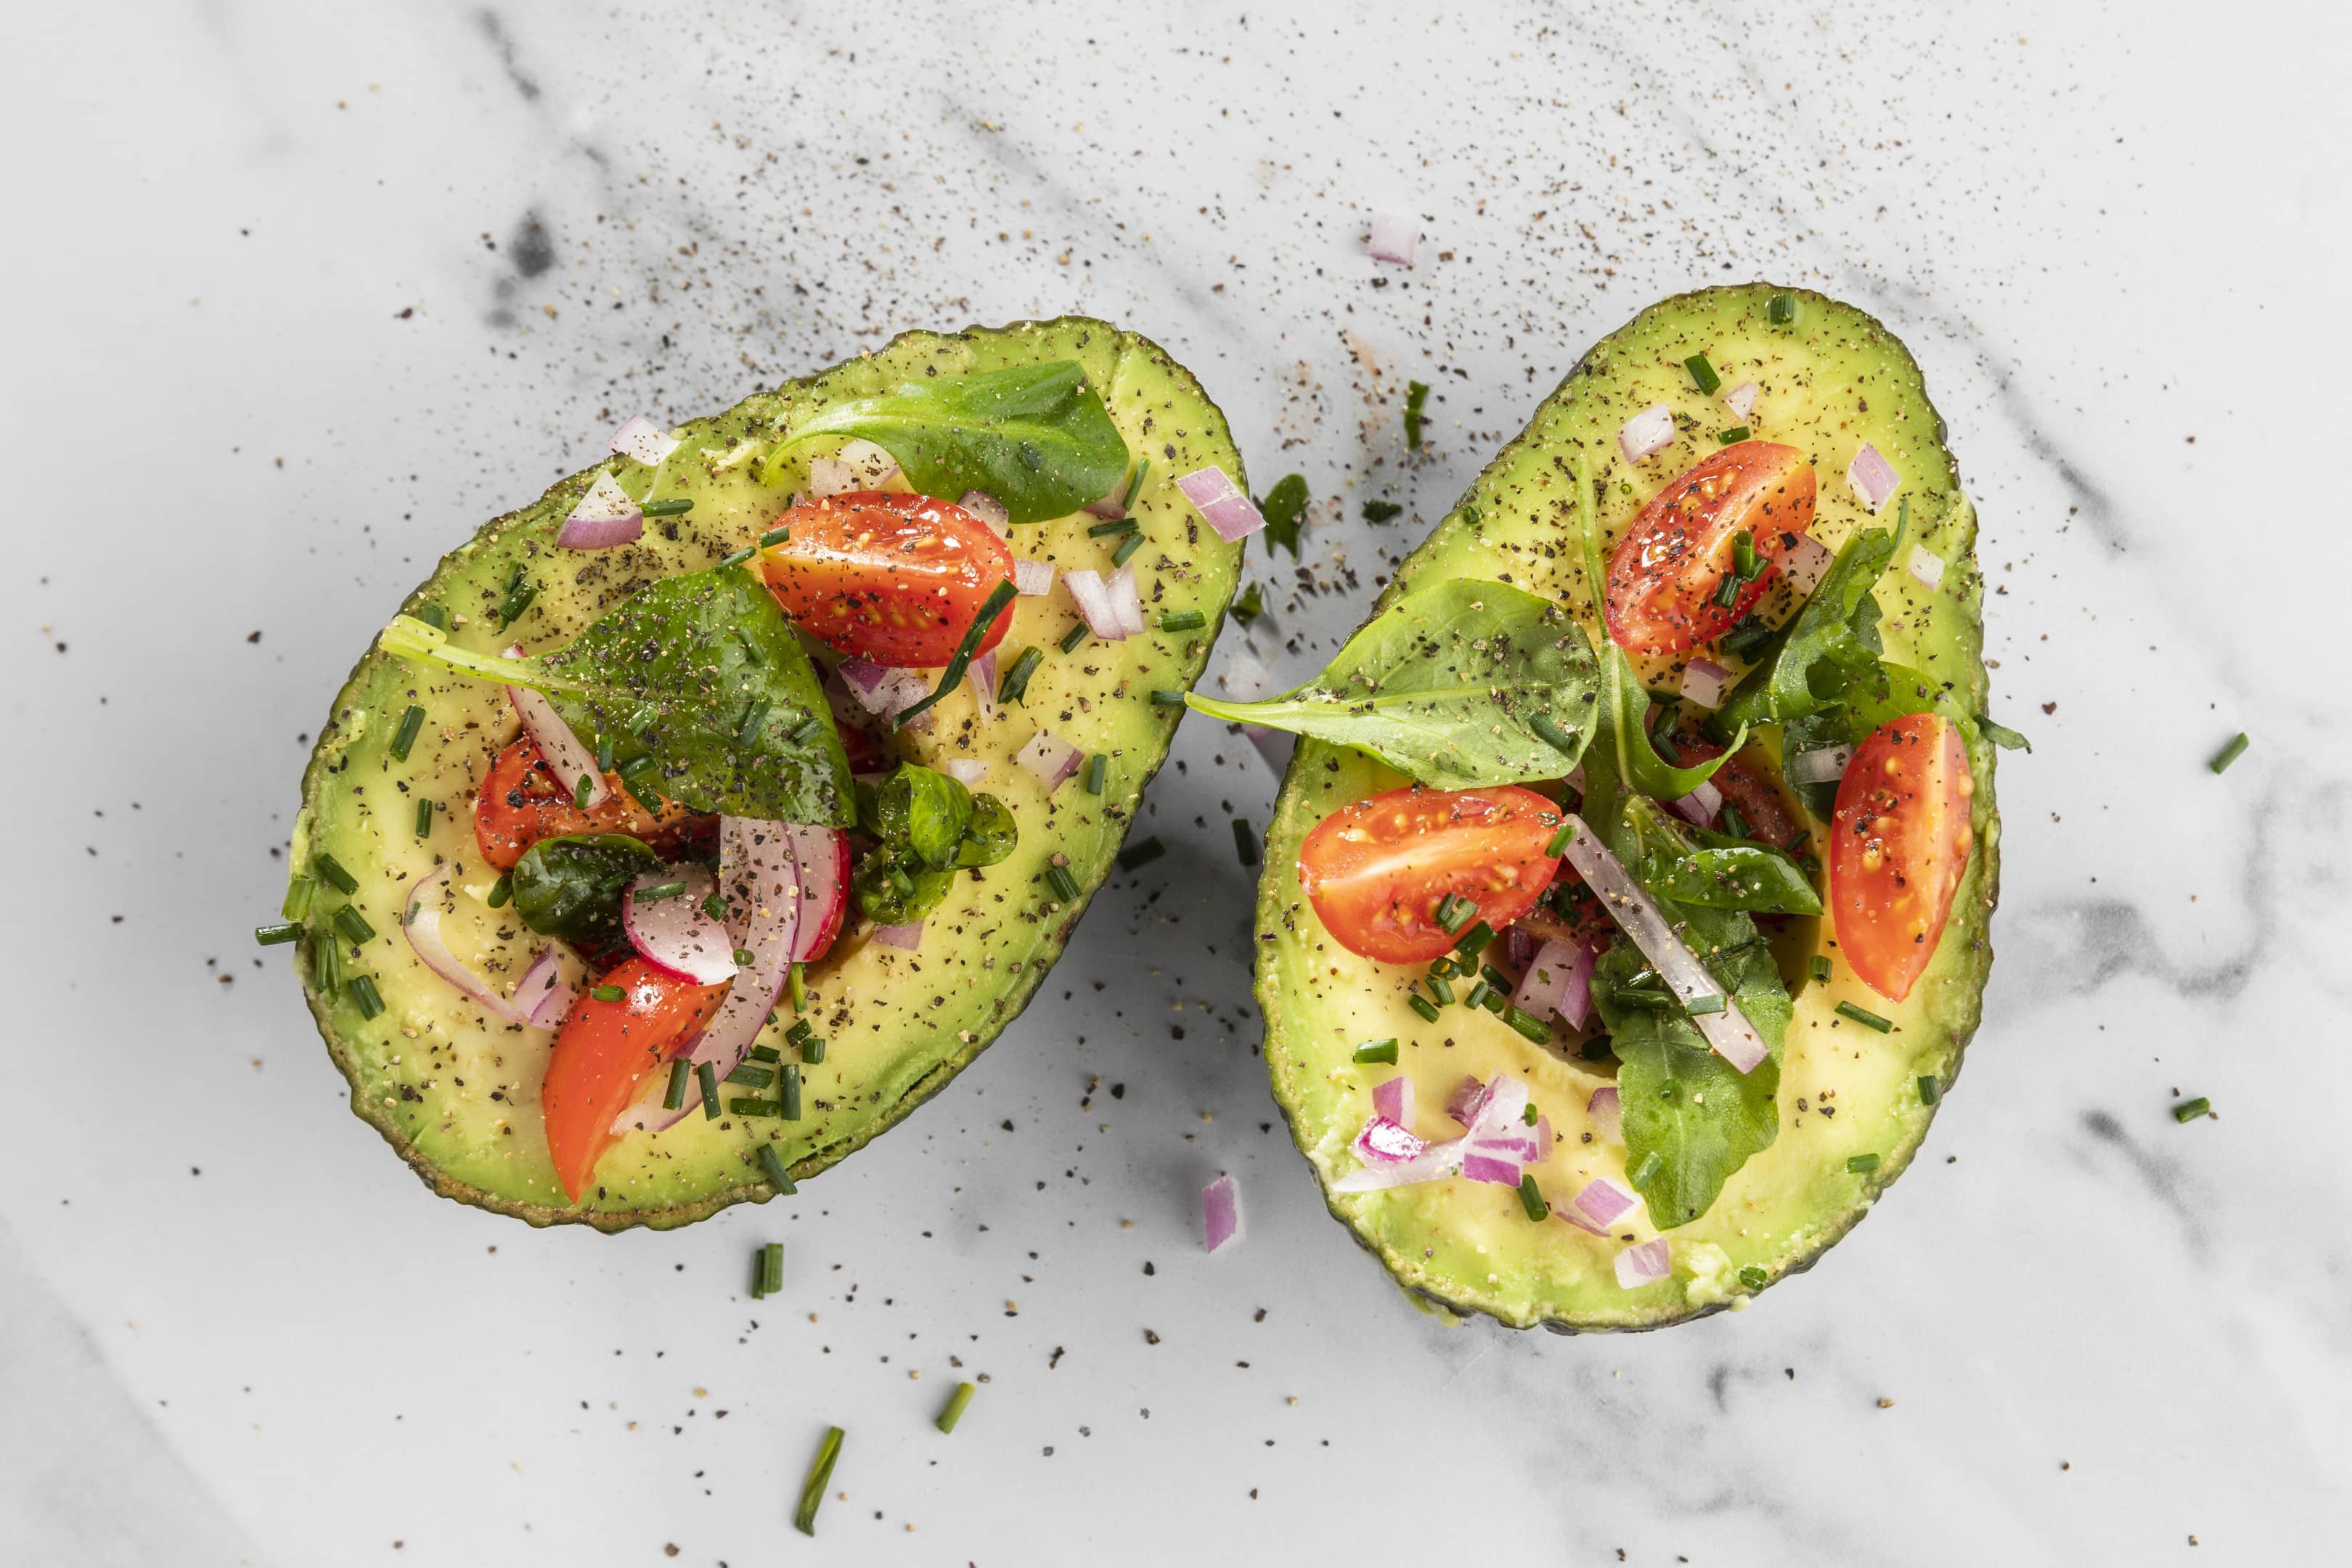 Healthy salad in avocado composition